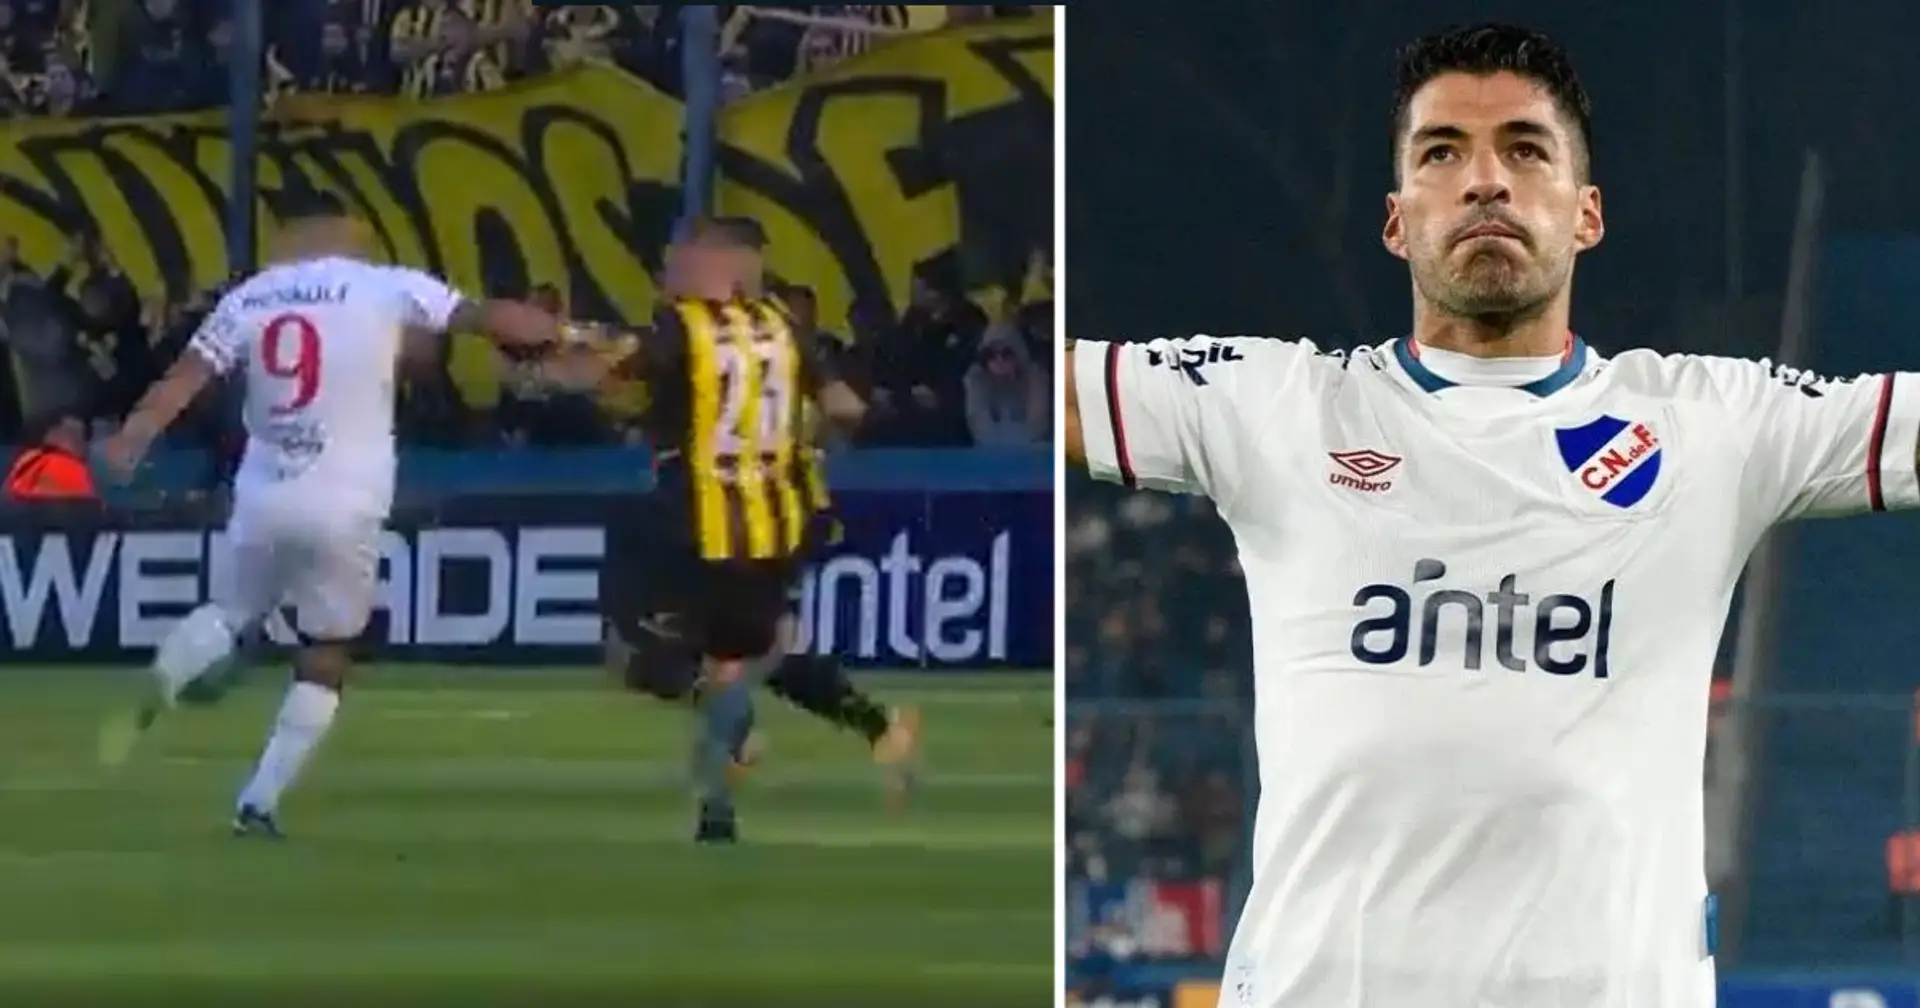 Suarez scores incredible weak-foot volley in Uruguay's biggest derby (video)